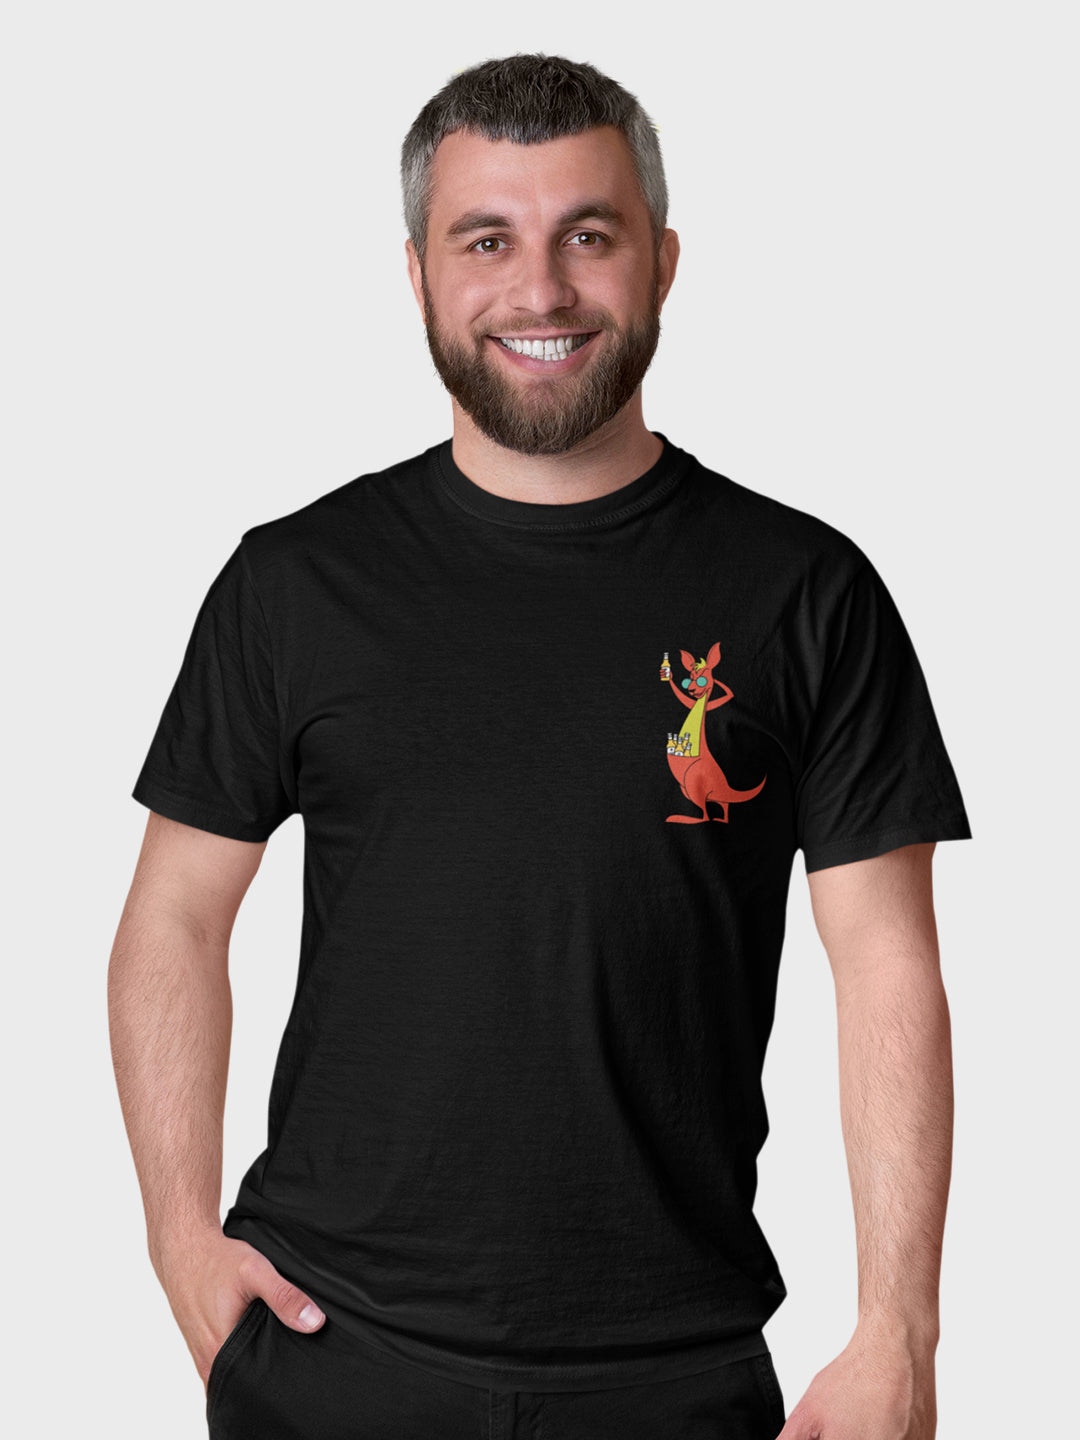 The Chilling Kangaroo T-Shirt